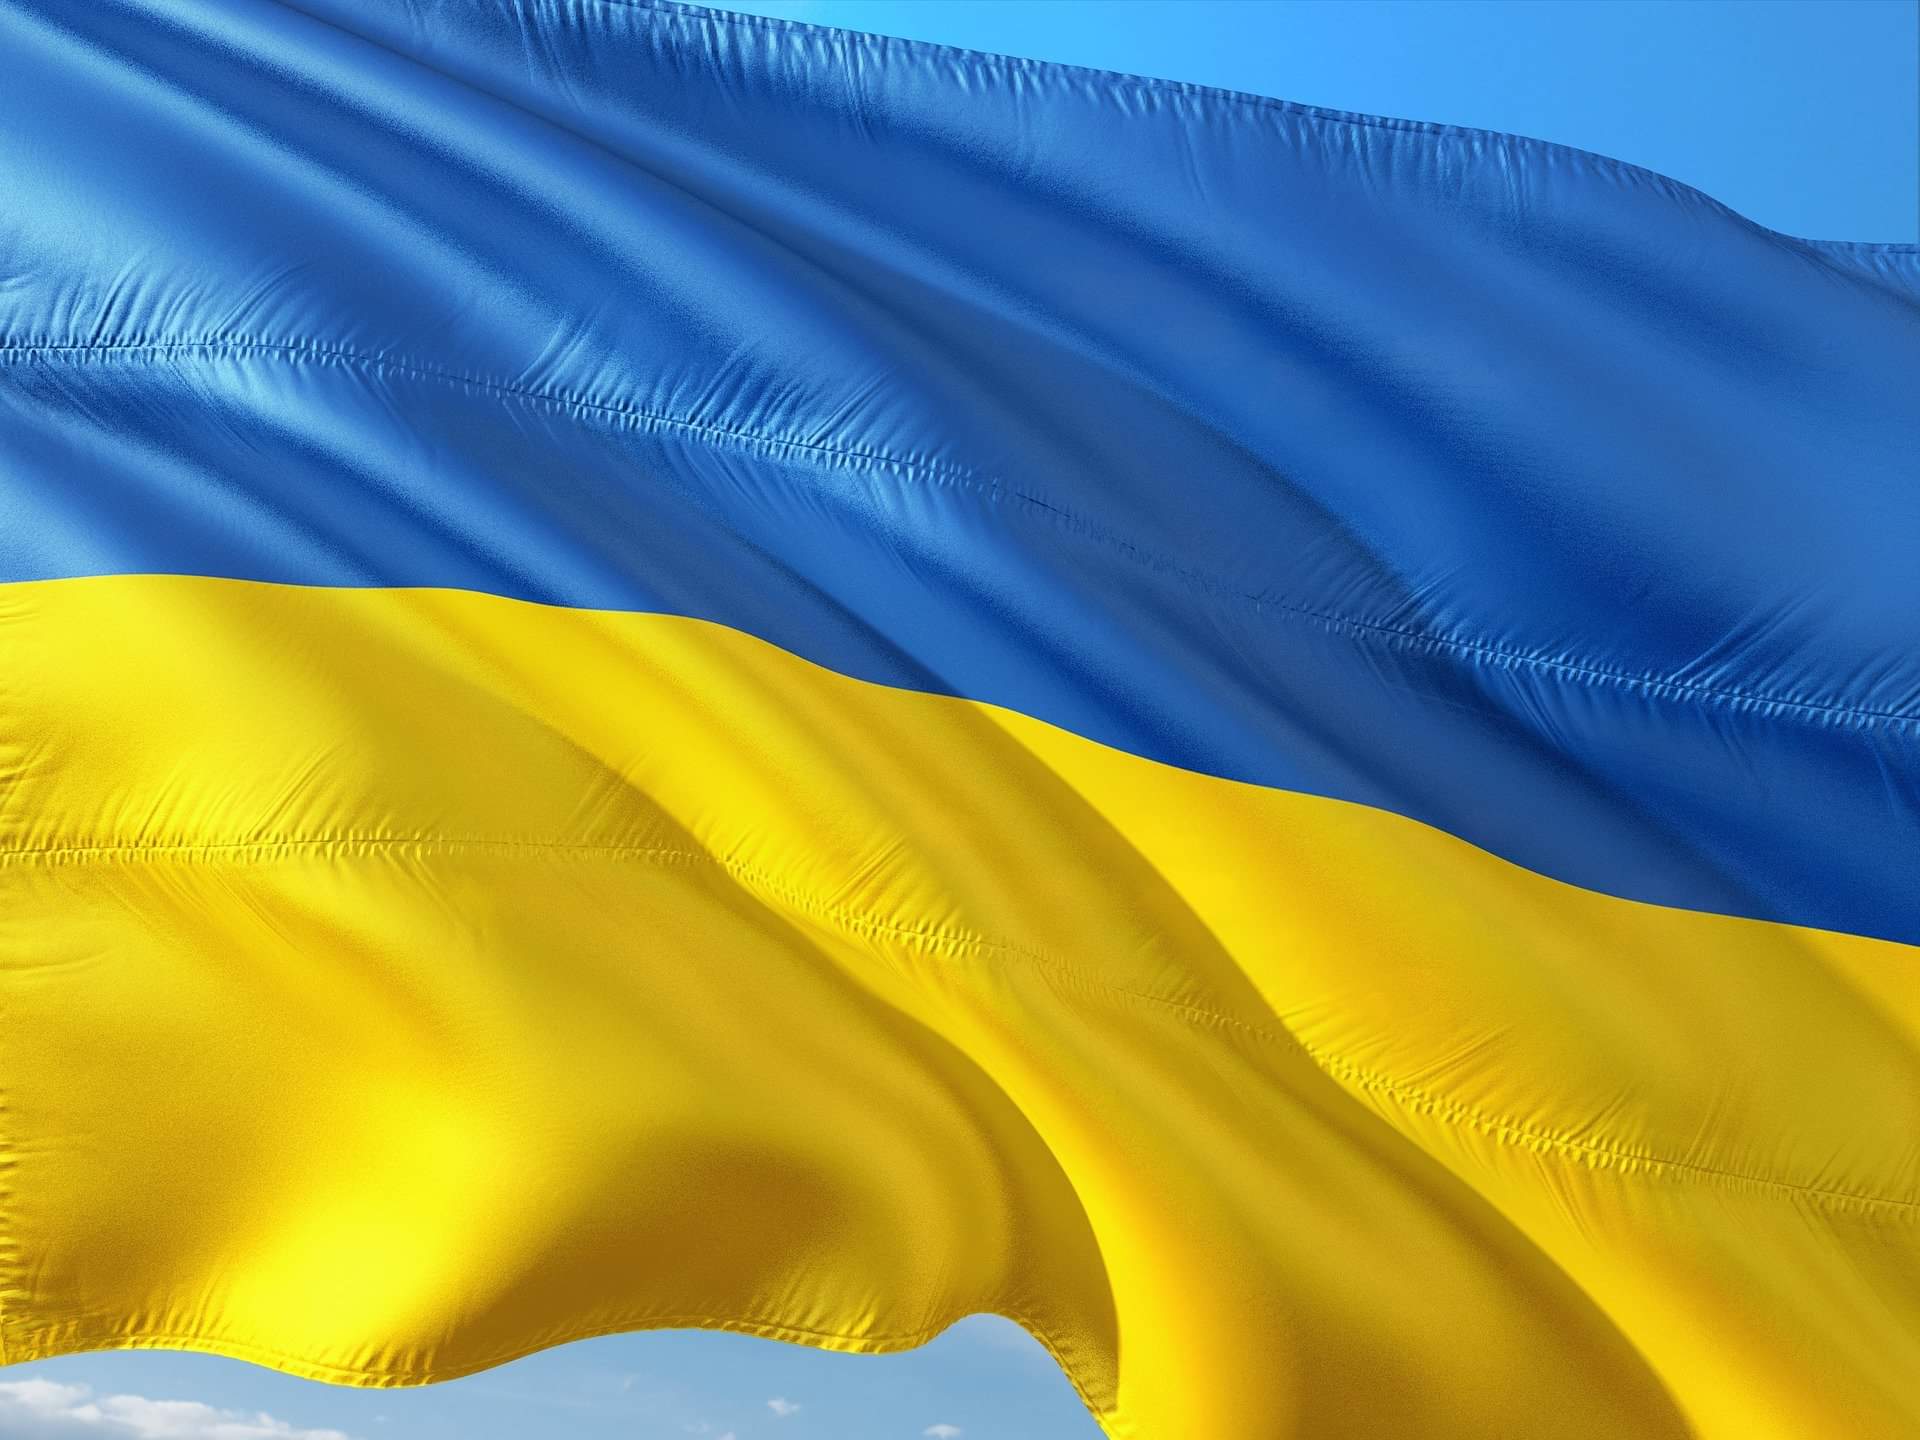 #SOLIDARNI Z UKRAINĄ - zachęcamy do pomocy ukraińskim archeologom